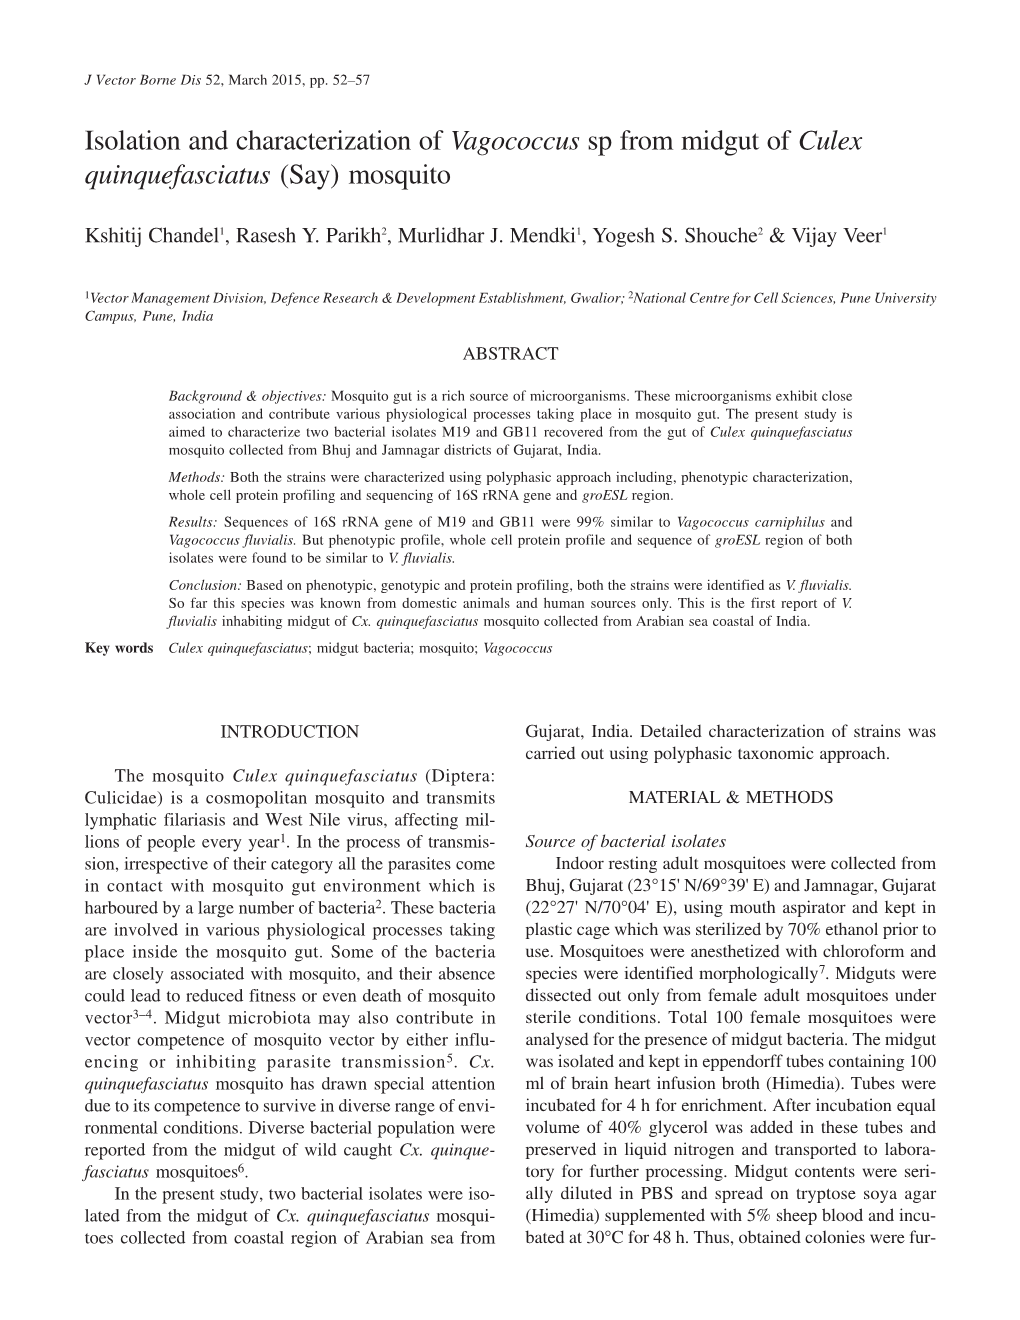 Isolation and Characterization of Vagococcus Sp from Midgut of Culex Quinquefasciatus (Say) Mosquito